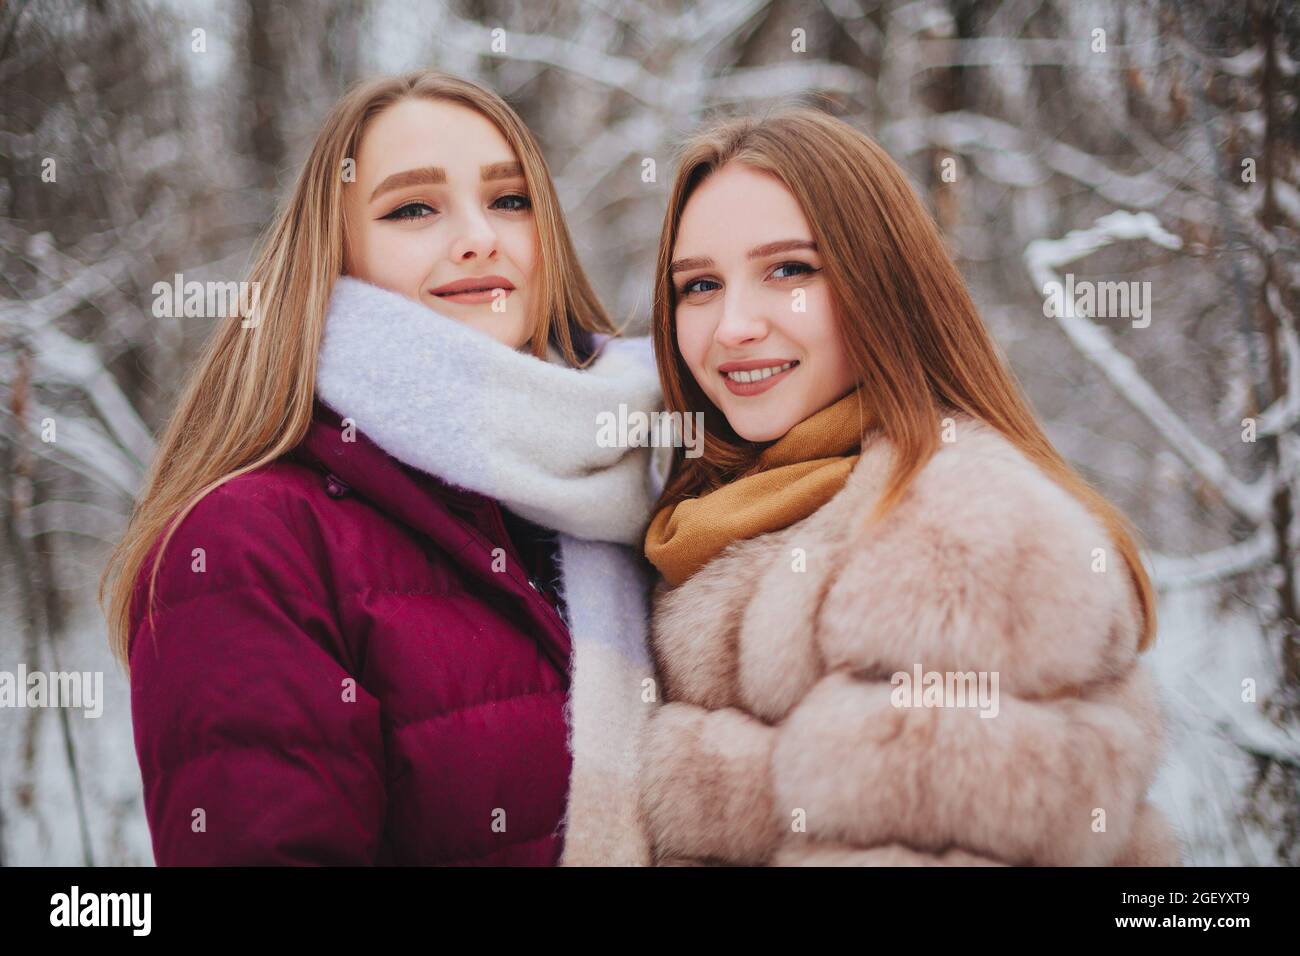 Deux amies joyeuses qui apprécient le temps de neige en plein air, les meilleures amies en hiver vêques en duvet vestes riant et s'amusant en marchant Banque D'Images